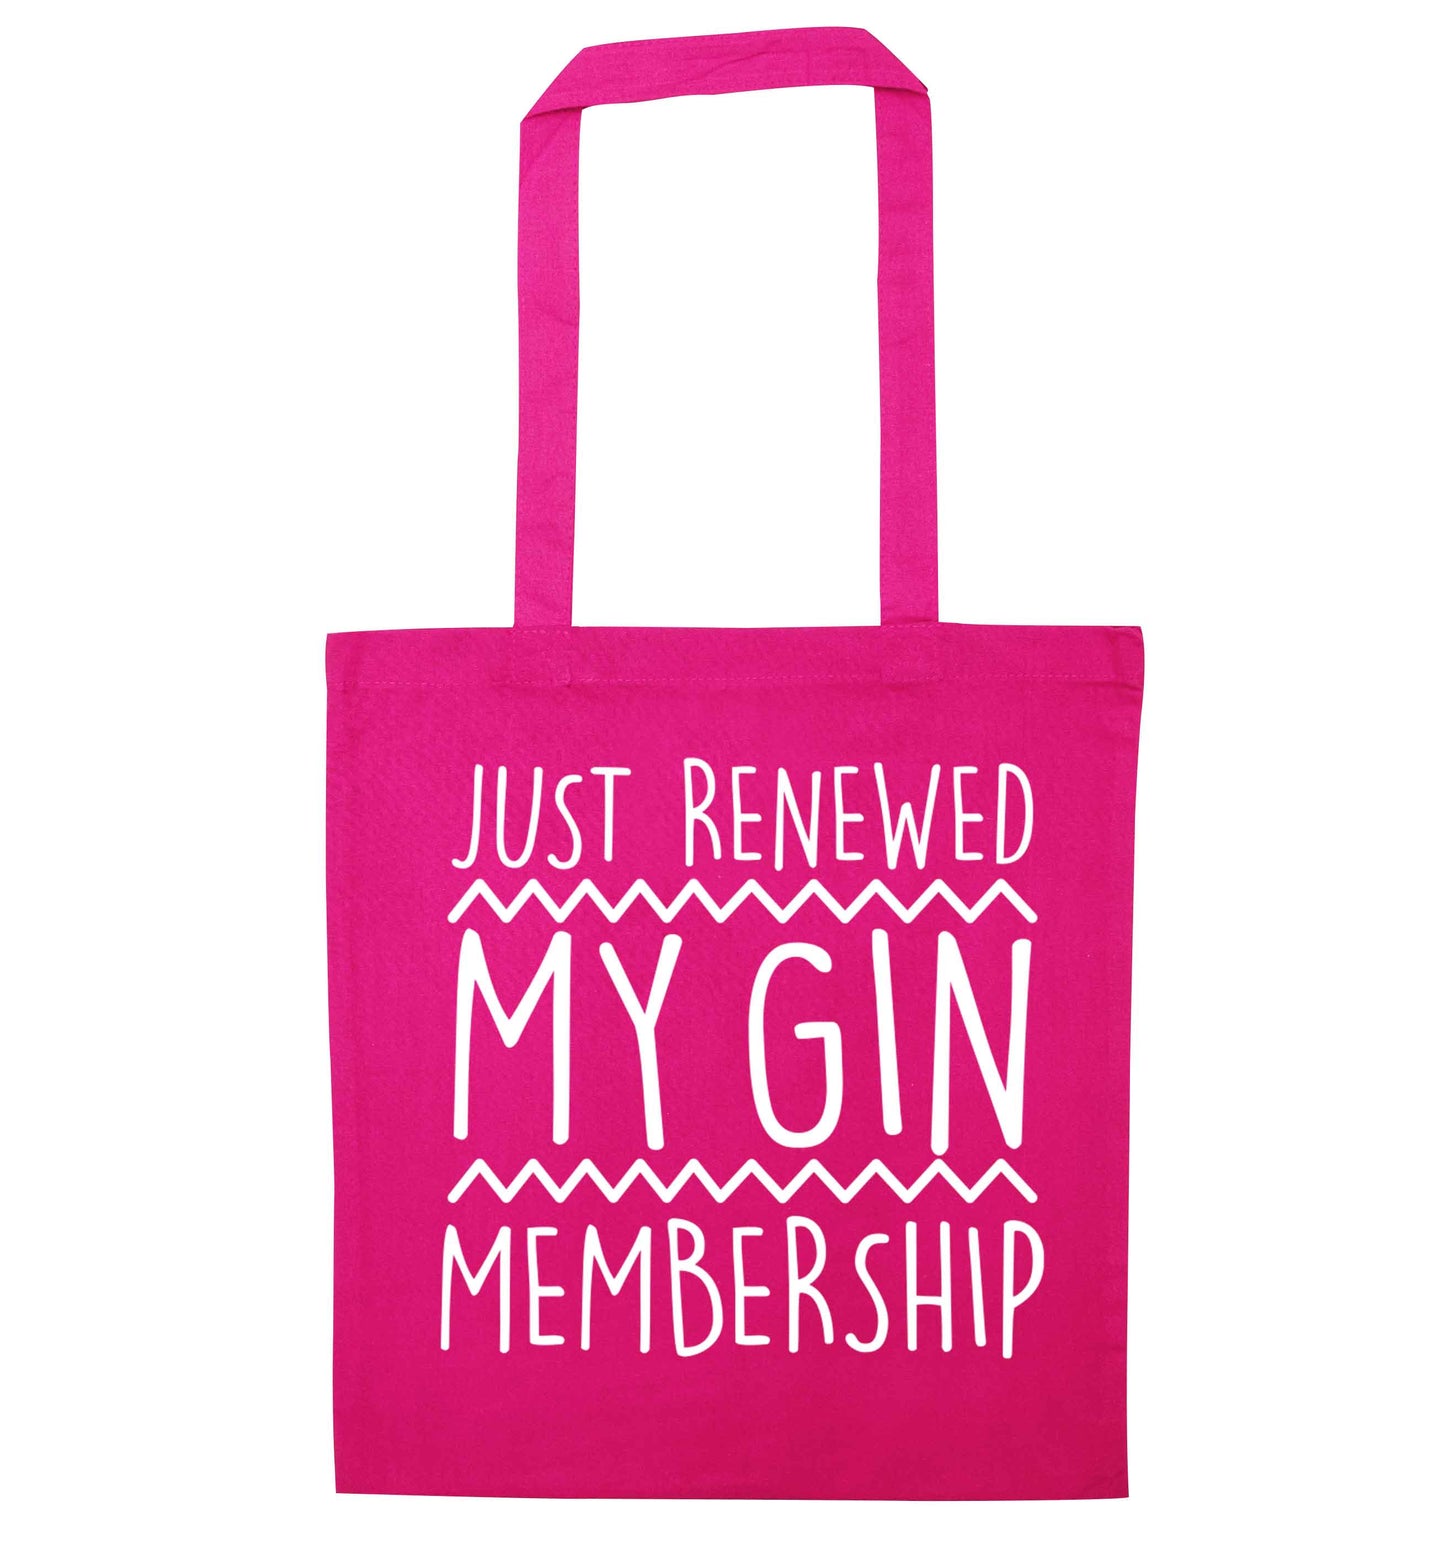 Just renewed my gin membership pink tote bag